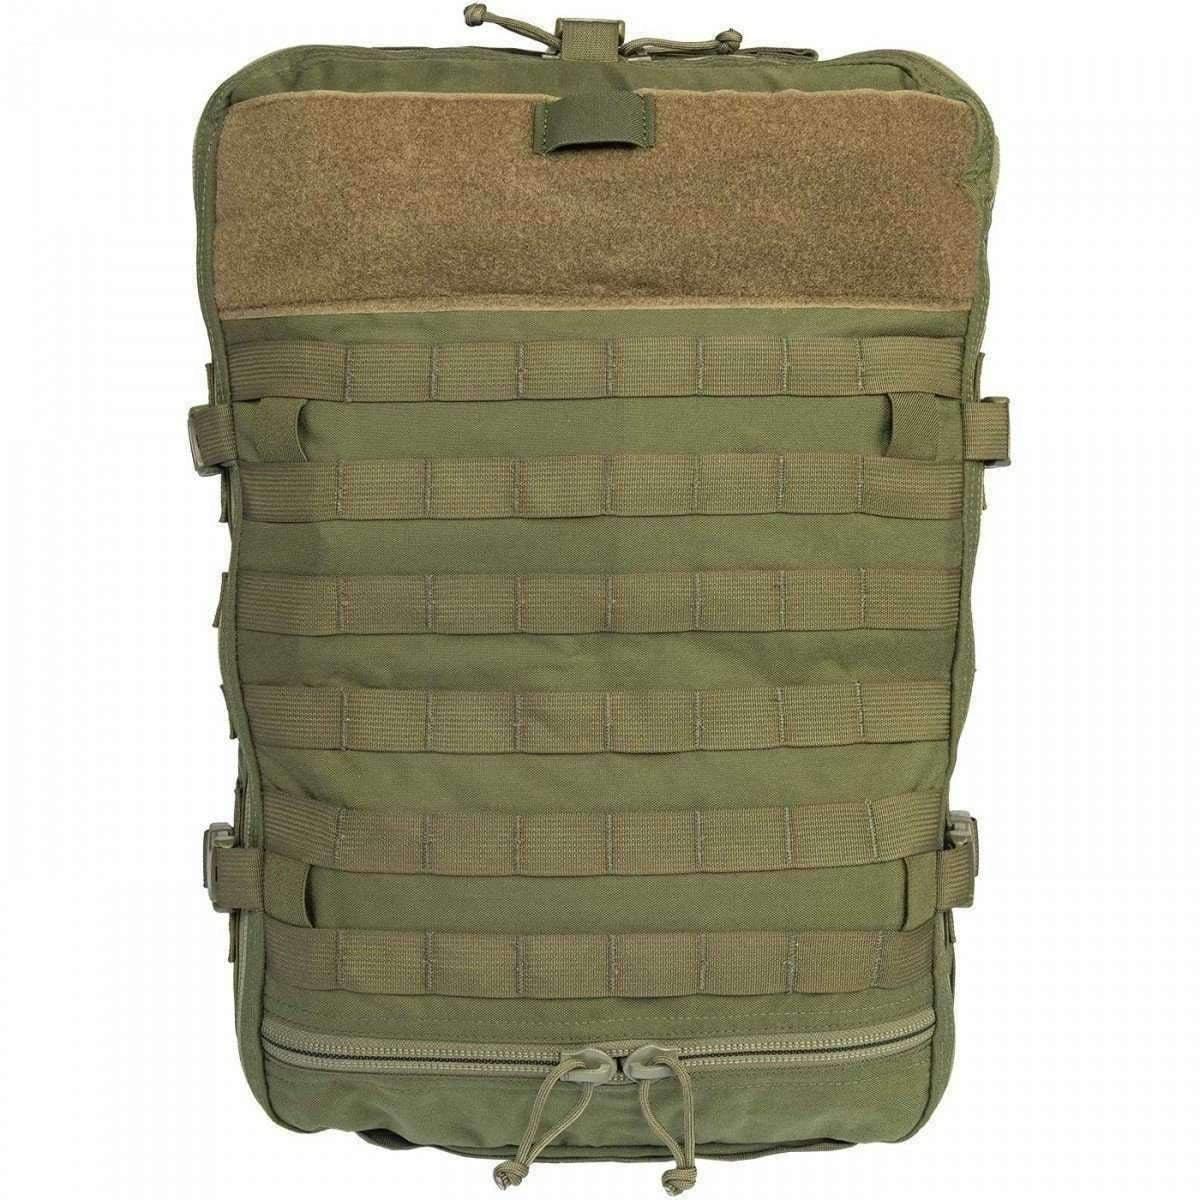 NAR-4 Aid Bag - Vendor